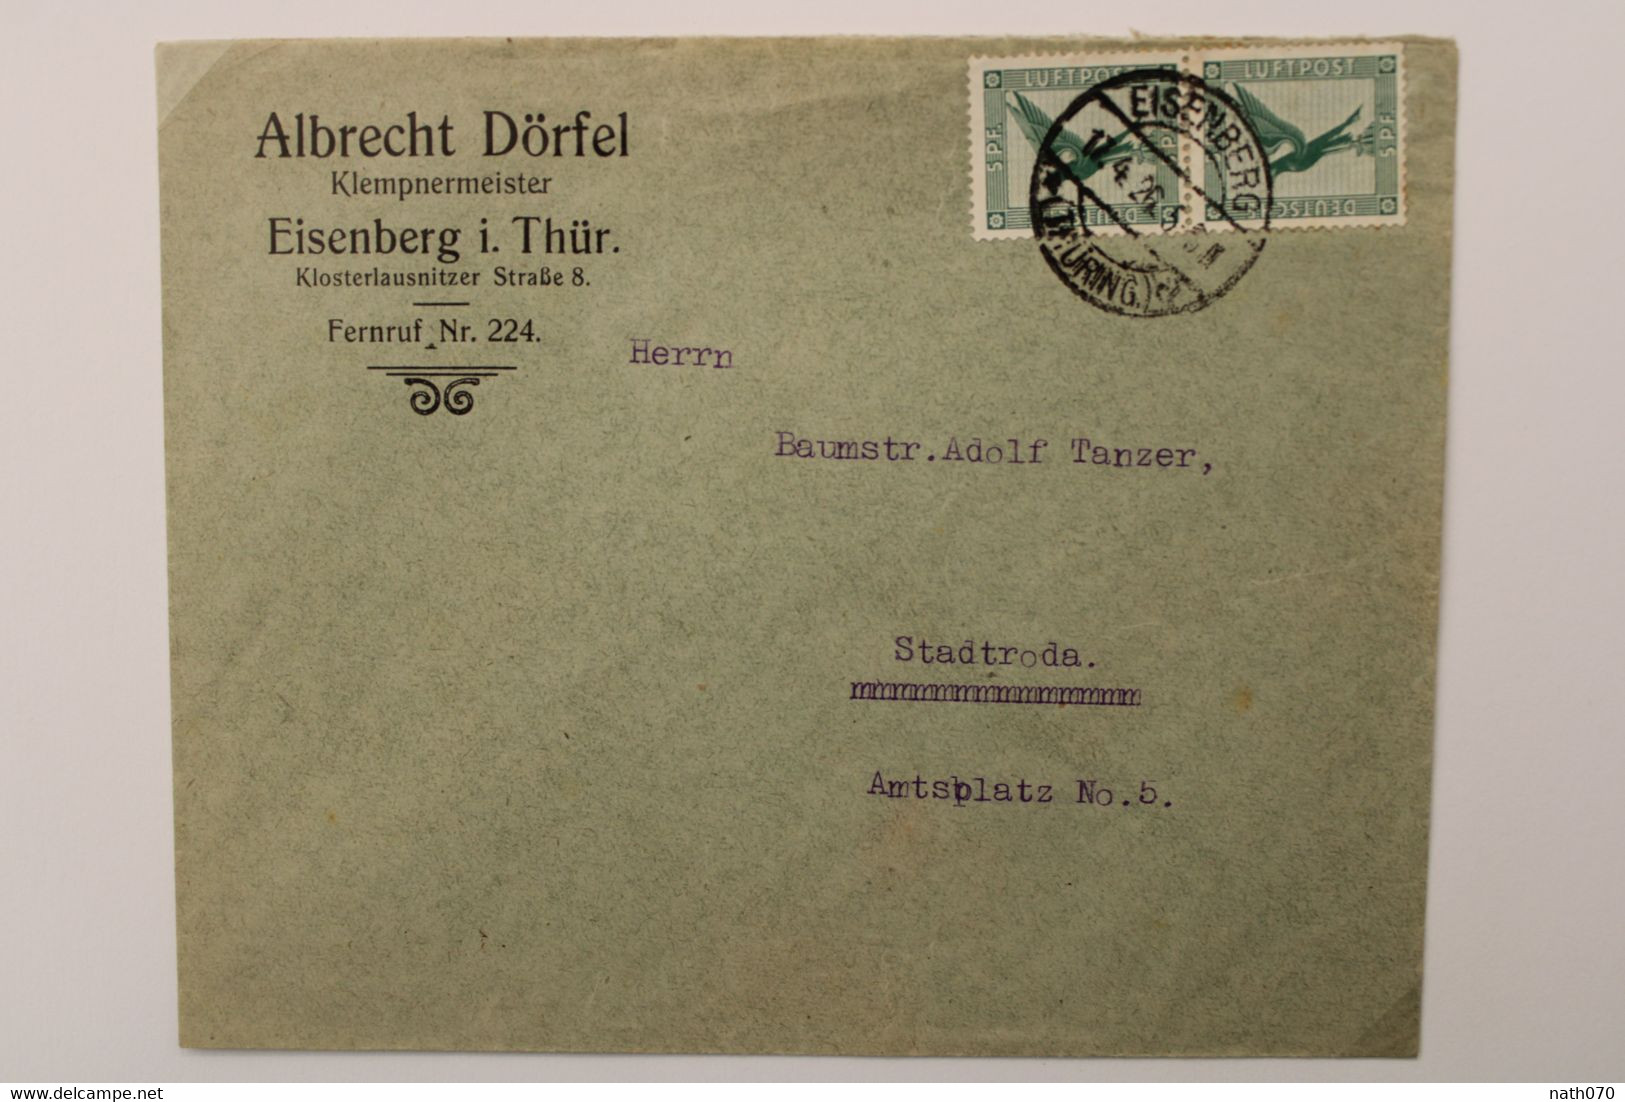 1926 Eisenberg Stadtroda Flugpost Paar Luftpost Air Mail Poste Aerienne Cover Deutsches Reich Germany Allemagne Mi 378 - Covers & Documents